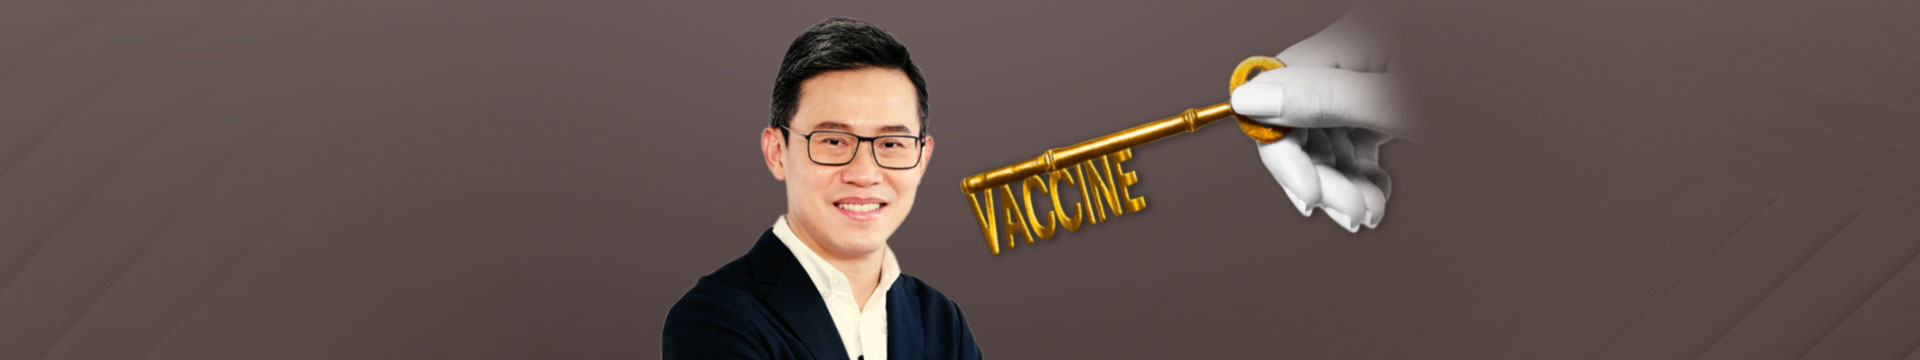 วัคซีนกุญแจสำคัญไขเศรษฐกิจไทย | เรื่องเงิน ย่อยง่าย EP.10